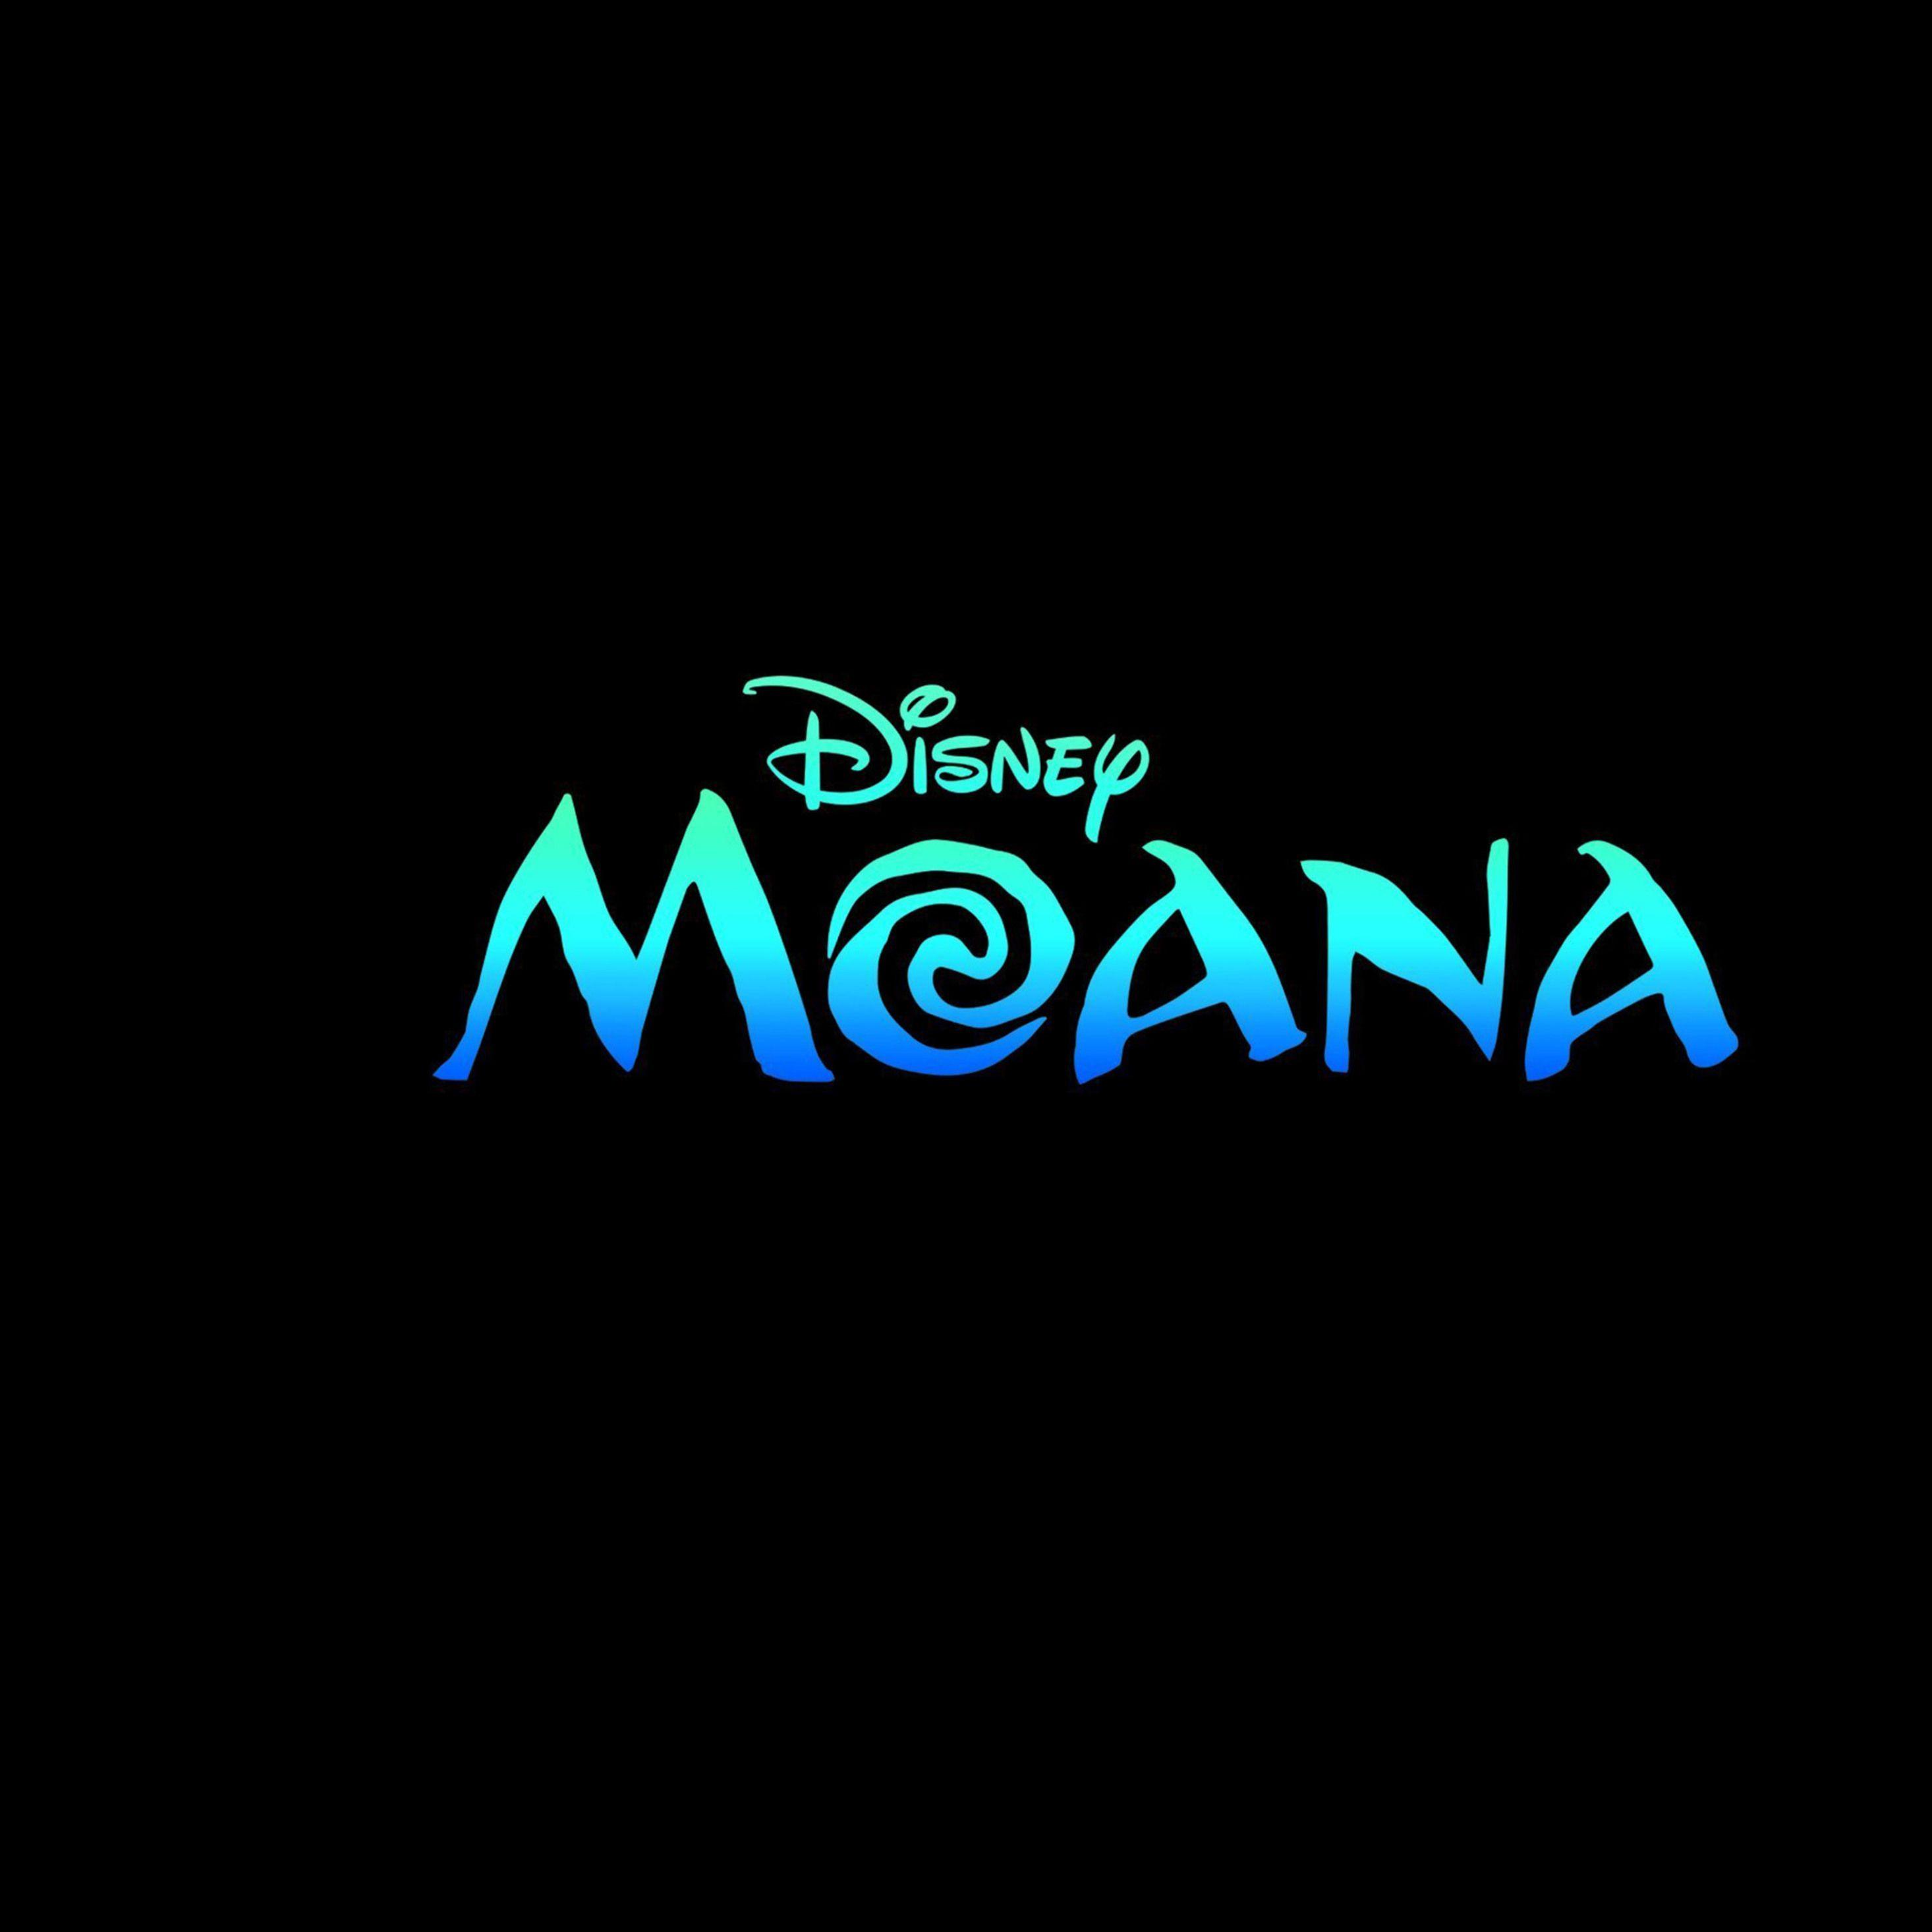 Moana Logo - 2932x2932 Moana Movie Logo Ipad Pro Retina Display HD 4k Wallpapers ...